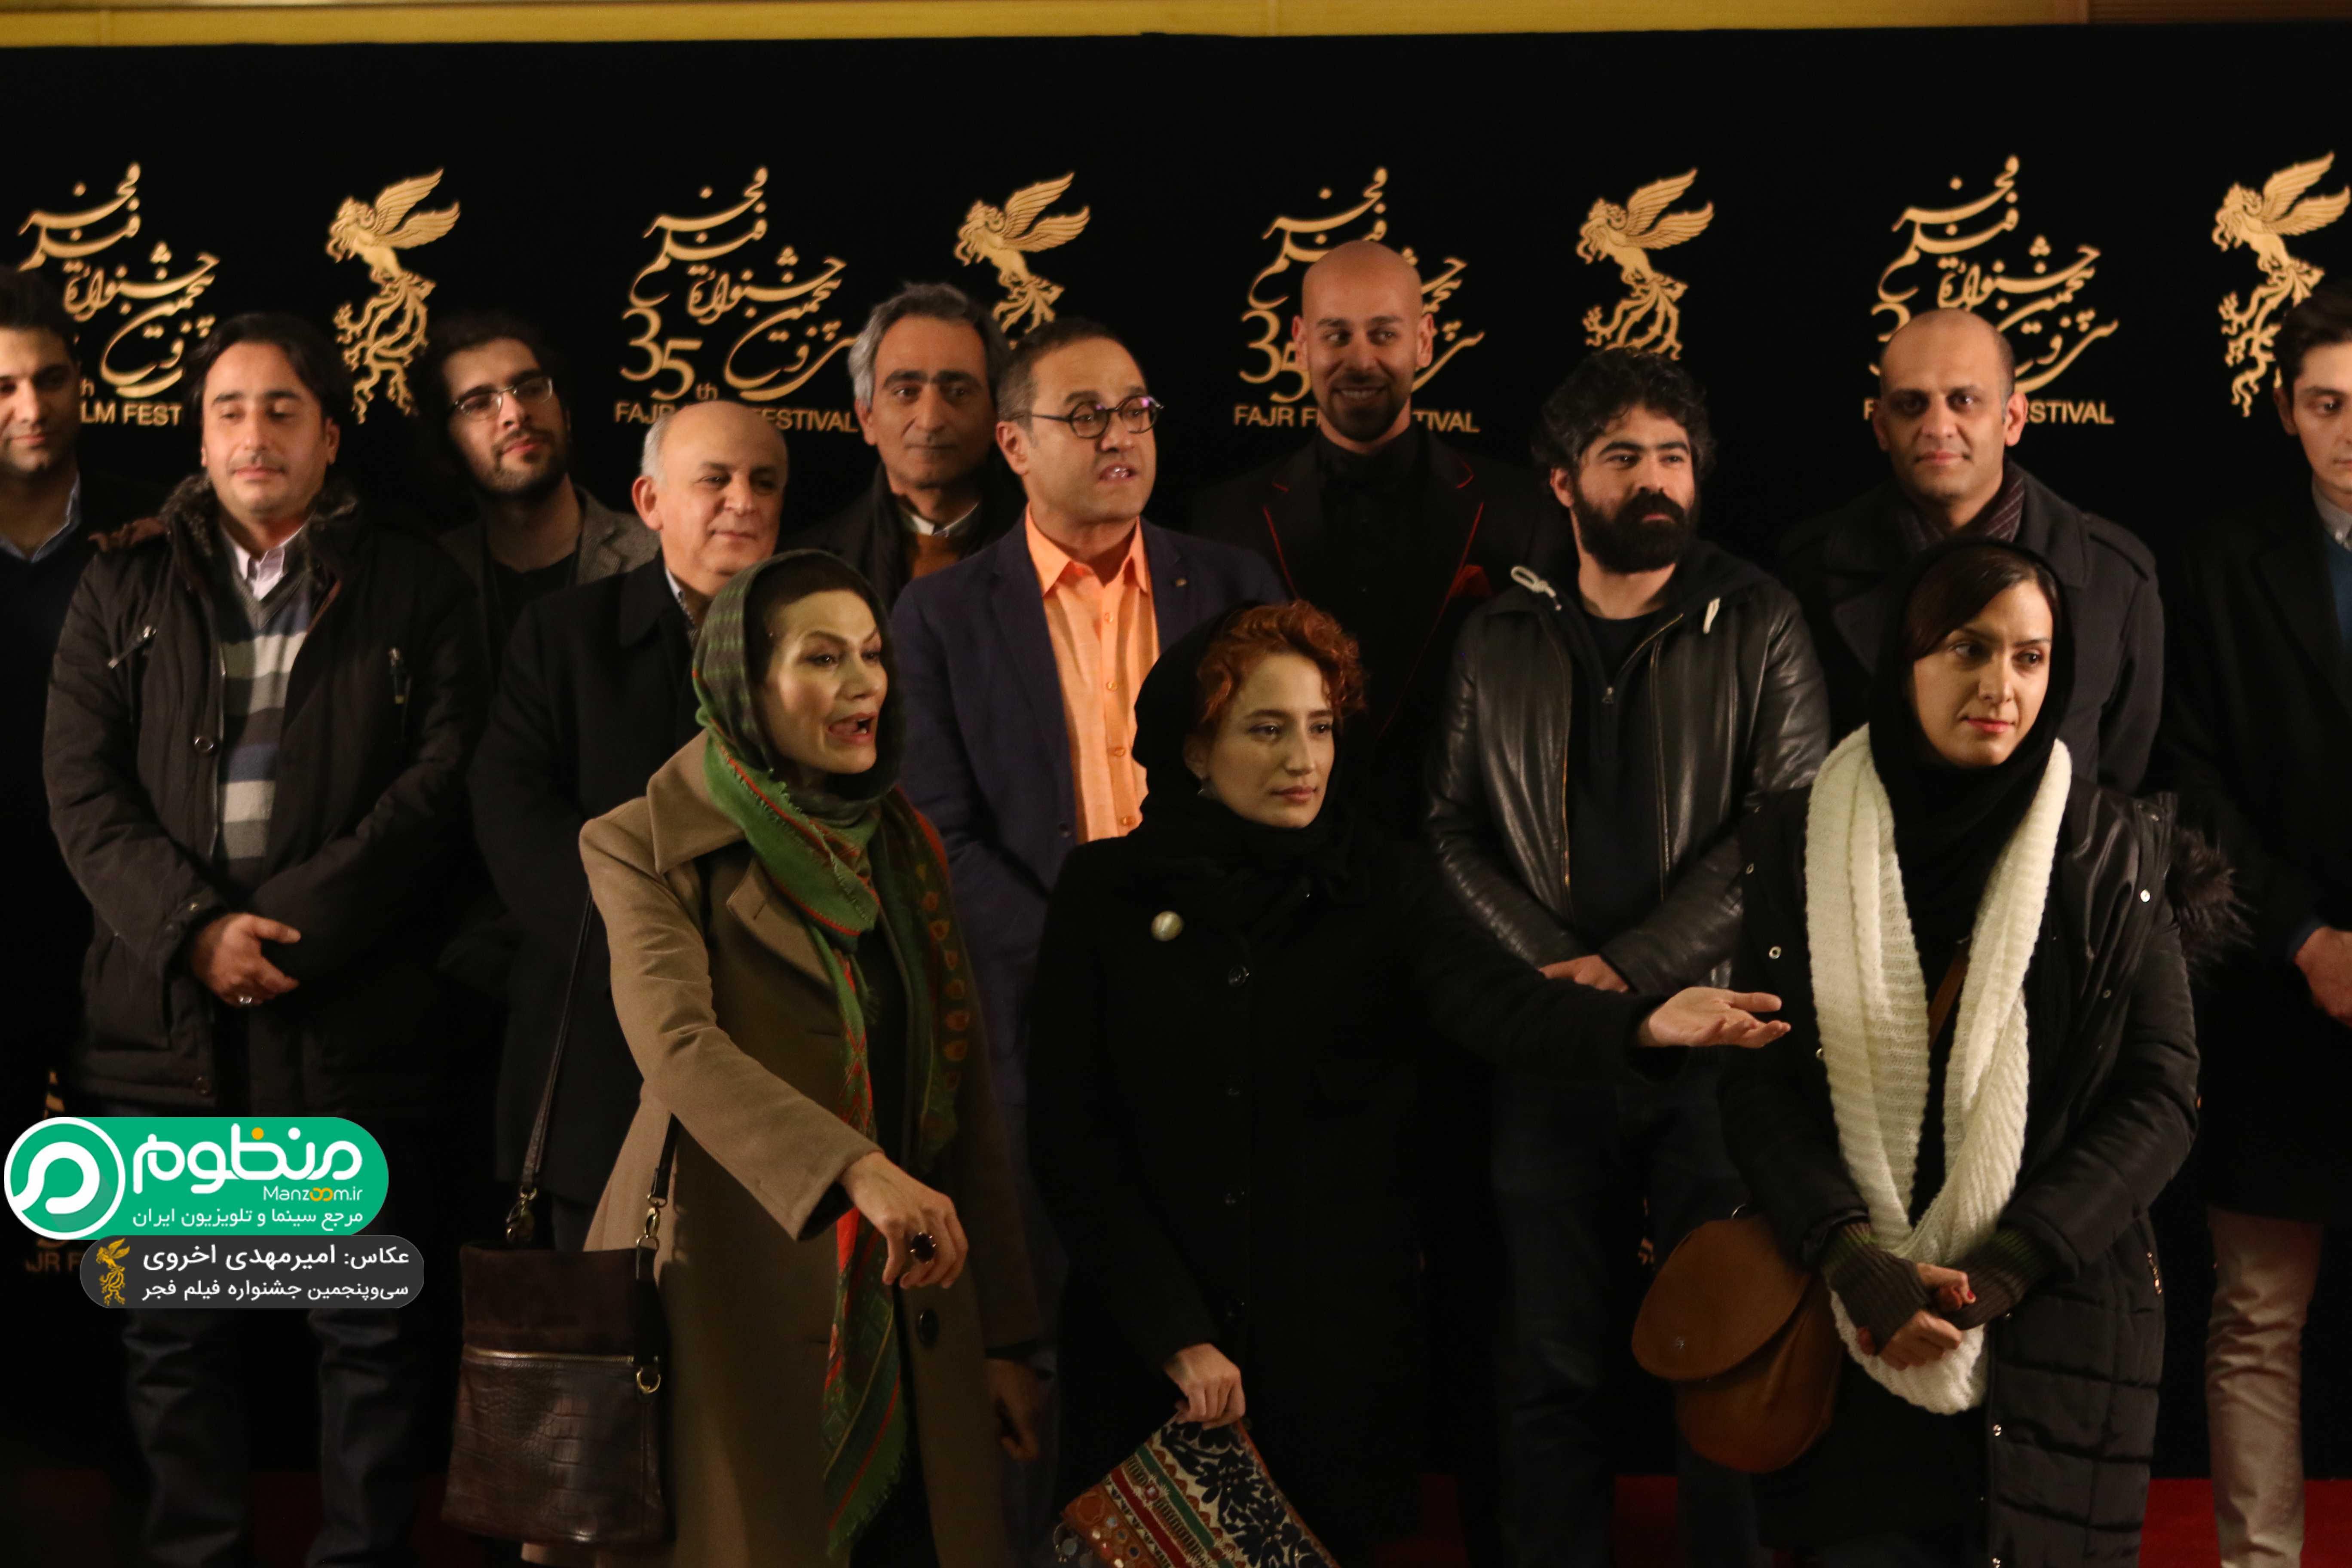 نگار جواهریان در اکران افتتاحیه فیلم سینمایی نگار به همراه بهرام بدخشانی و رامبد جوان